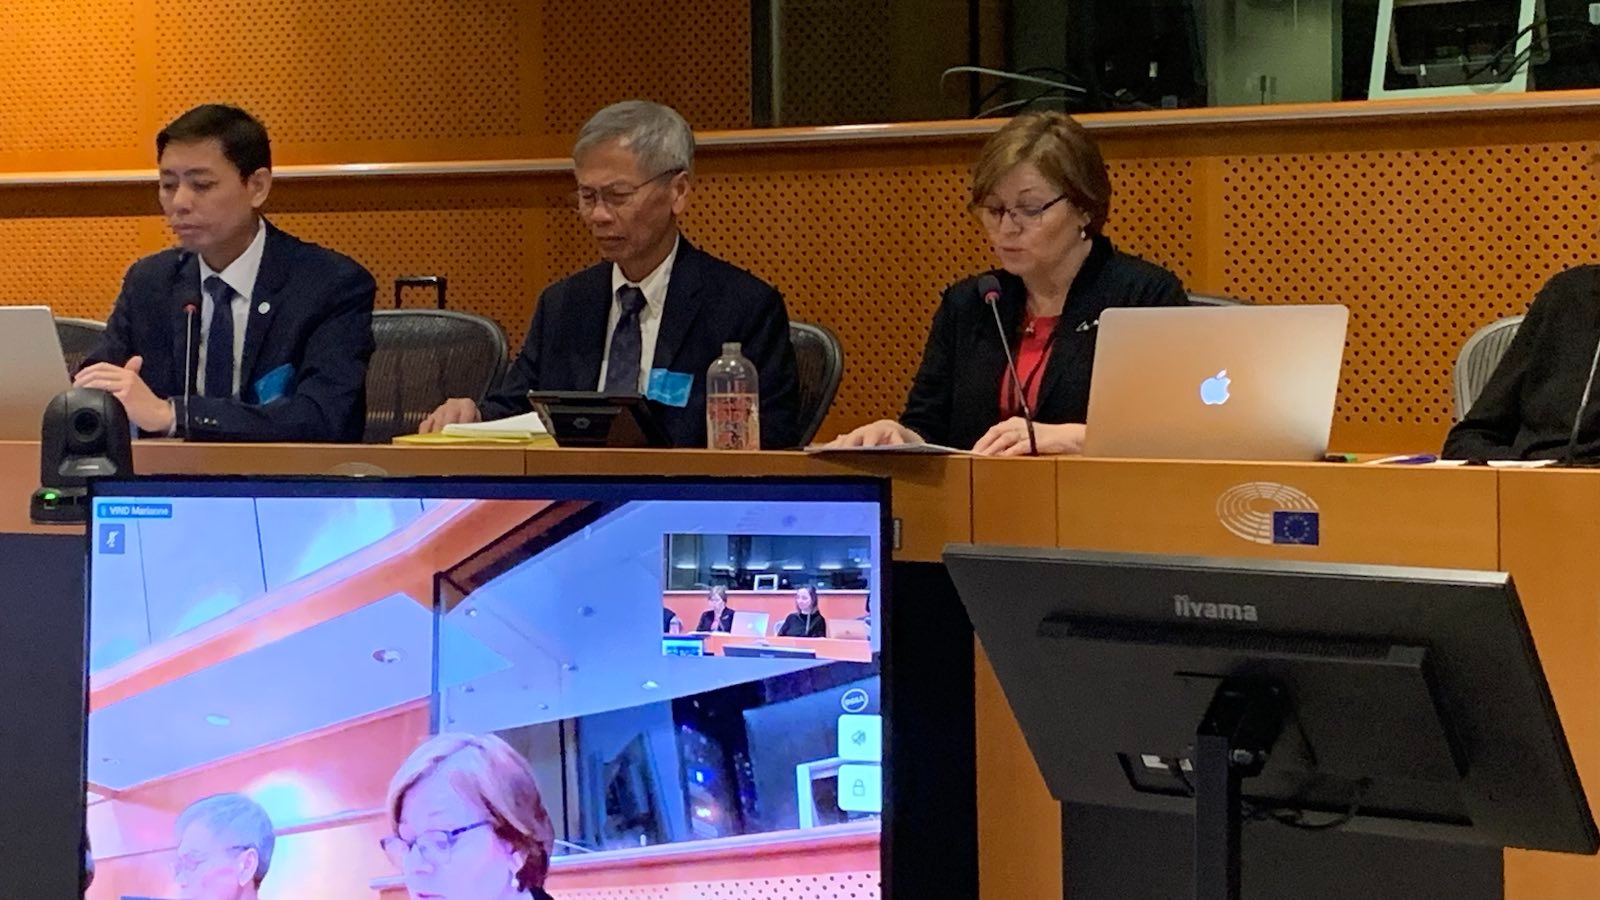 Một số trong các diễn giả của buổi hội thảo (từ trái): Anh Trần Đức Tuấn Sơn, đại diện tổ chức Việt Tân tại Âu Châu; ông Huy Nguyễn, Giám đốc tổ chức Bảo vệ Người Lao động Việt Nam (Vietnam Worker Defenders); và Dân biểu Nghị viện Châu Âu (European Parliament) Marianne Vind (đang phát biểu). Ảnh: Screenshot Cisco Webex